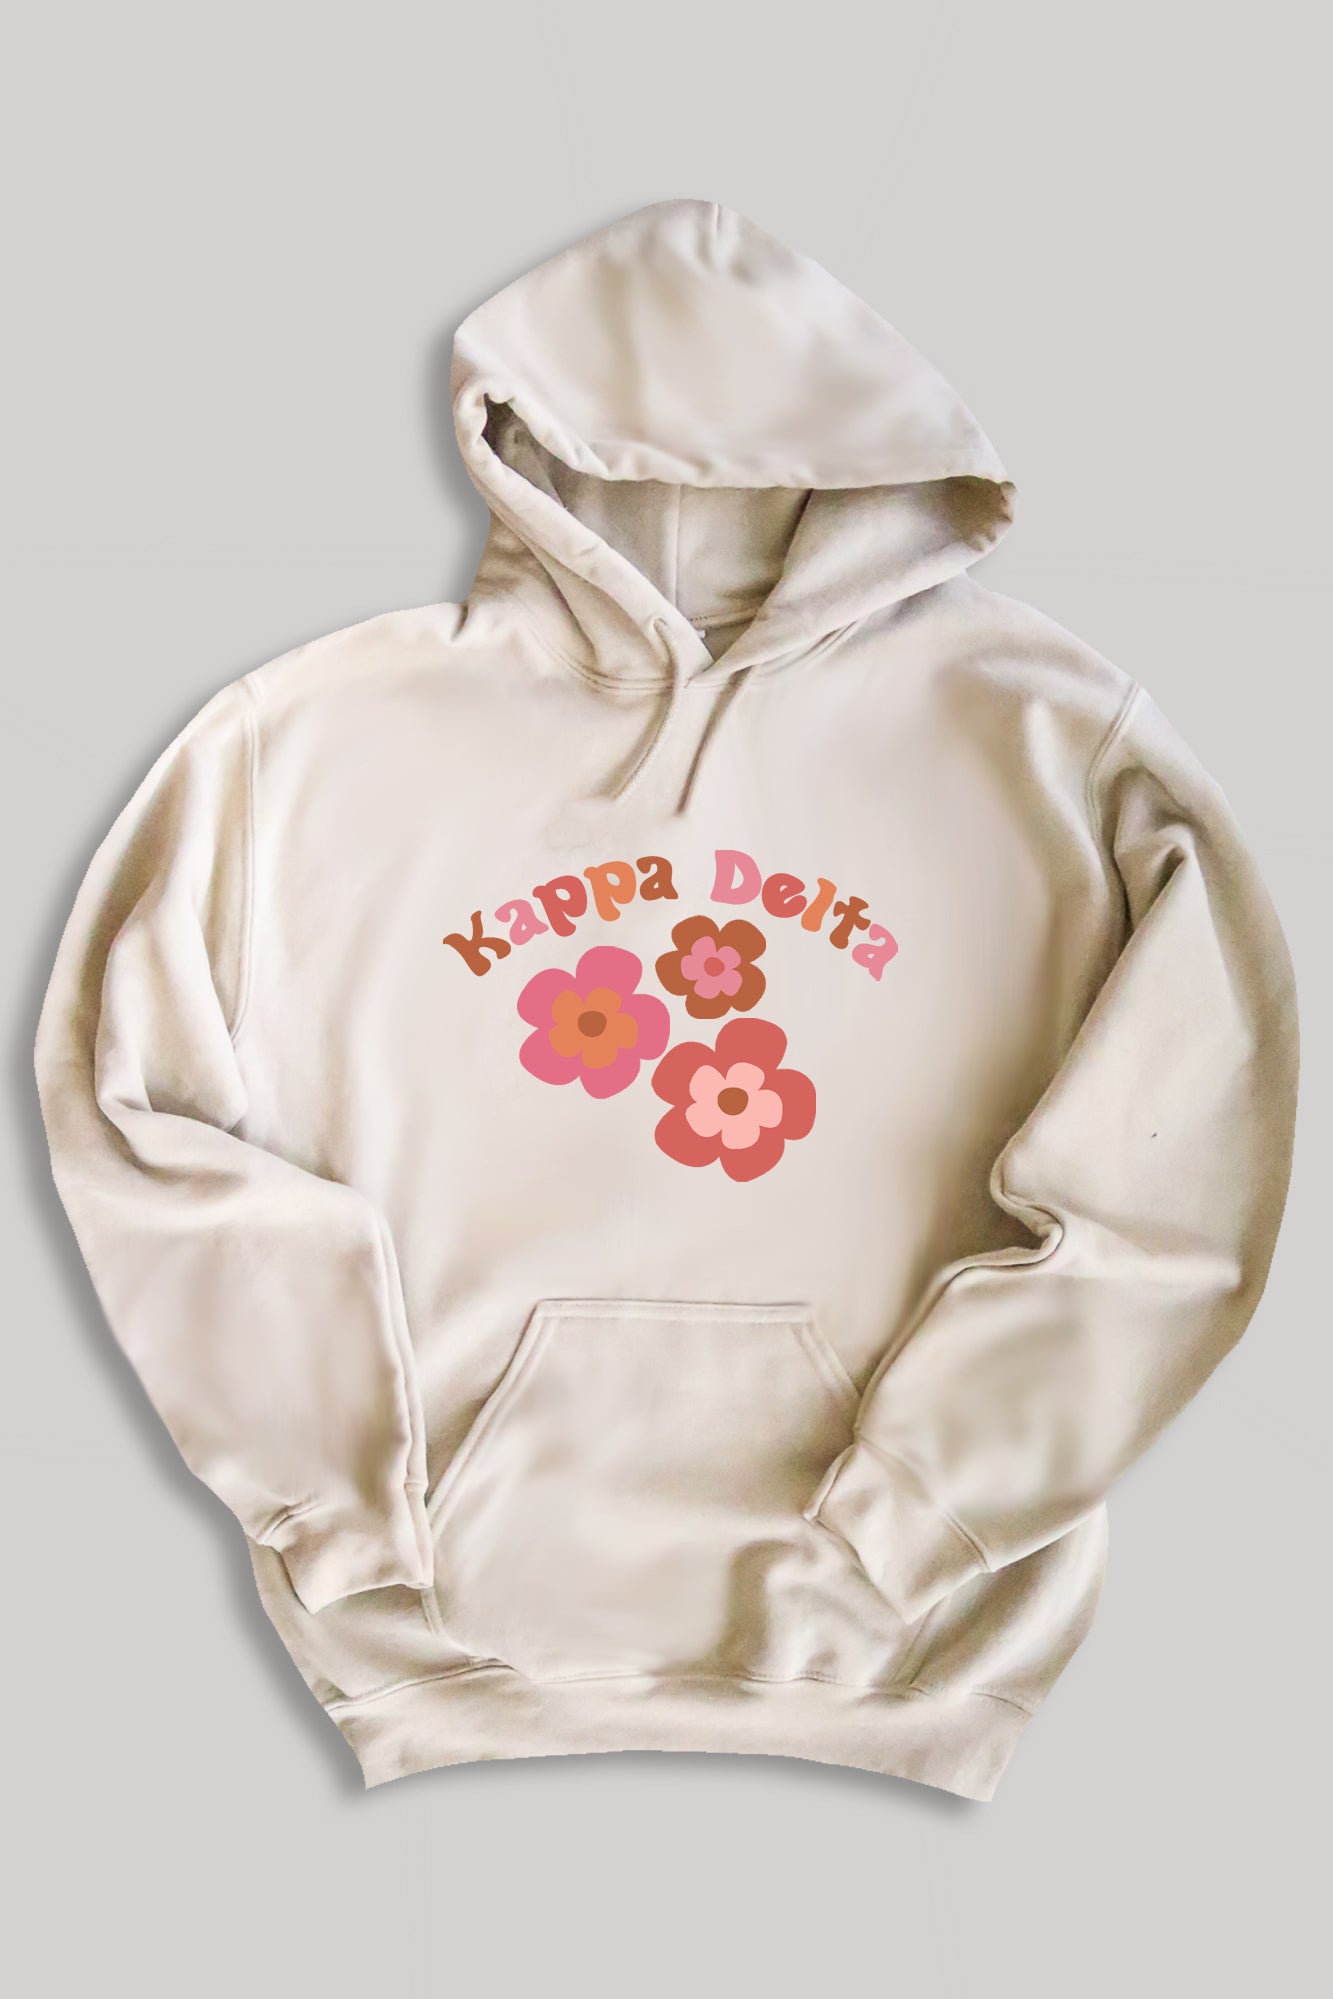 Groovy hoodie - Kappa Delta